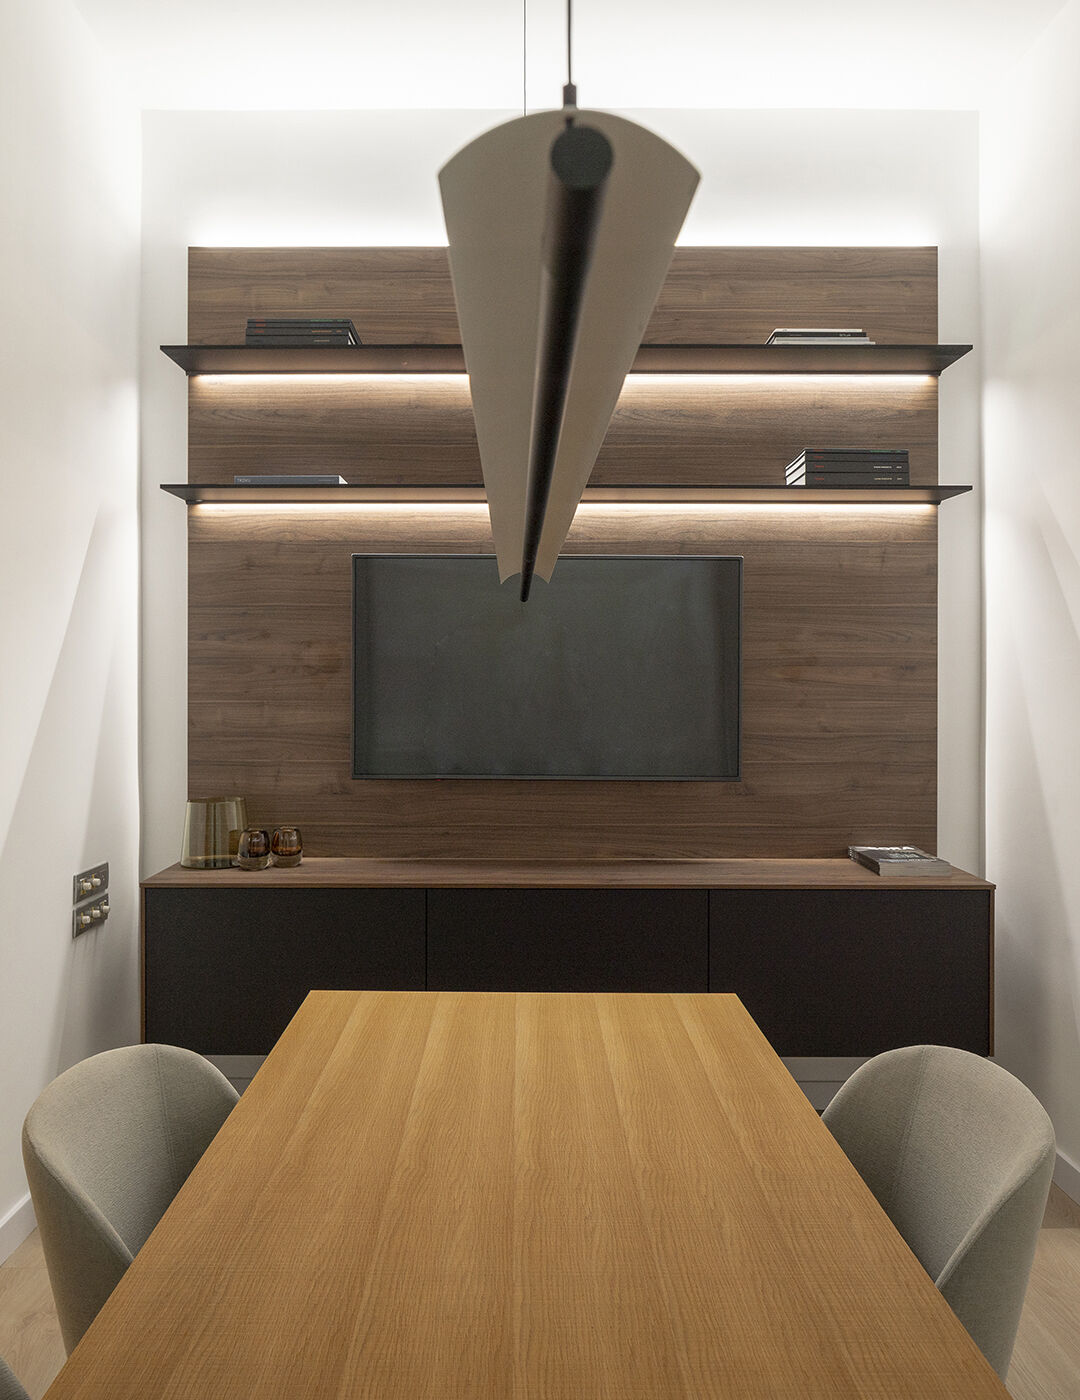 Mesa y mueble modular en exposición Santos Bilbao